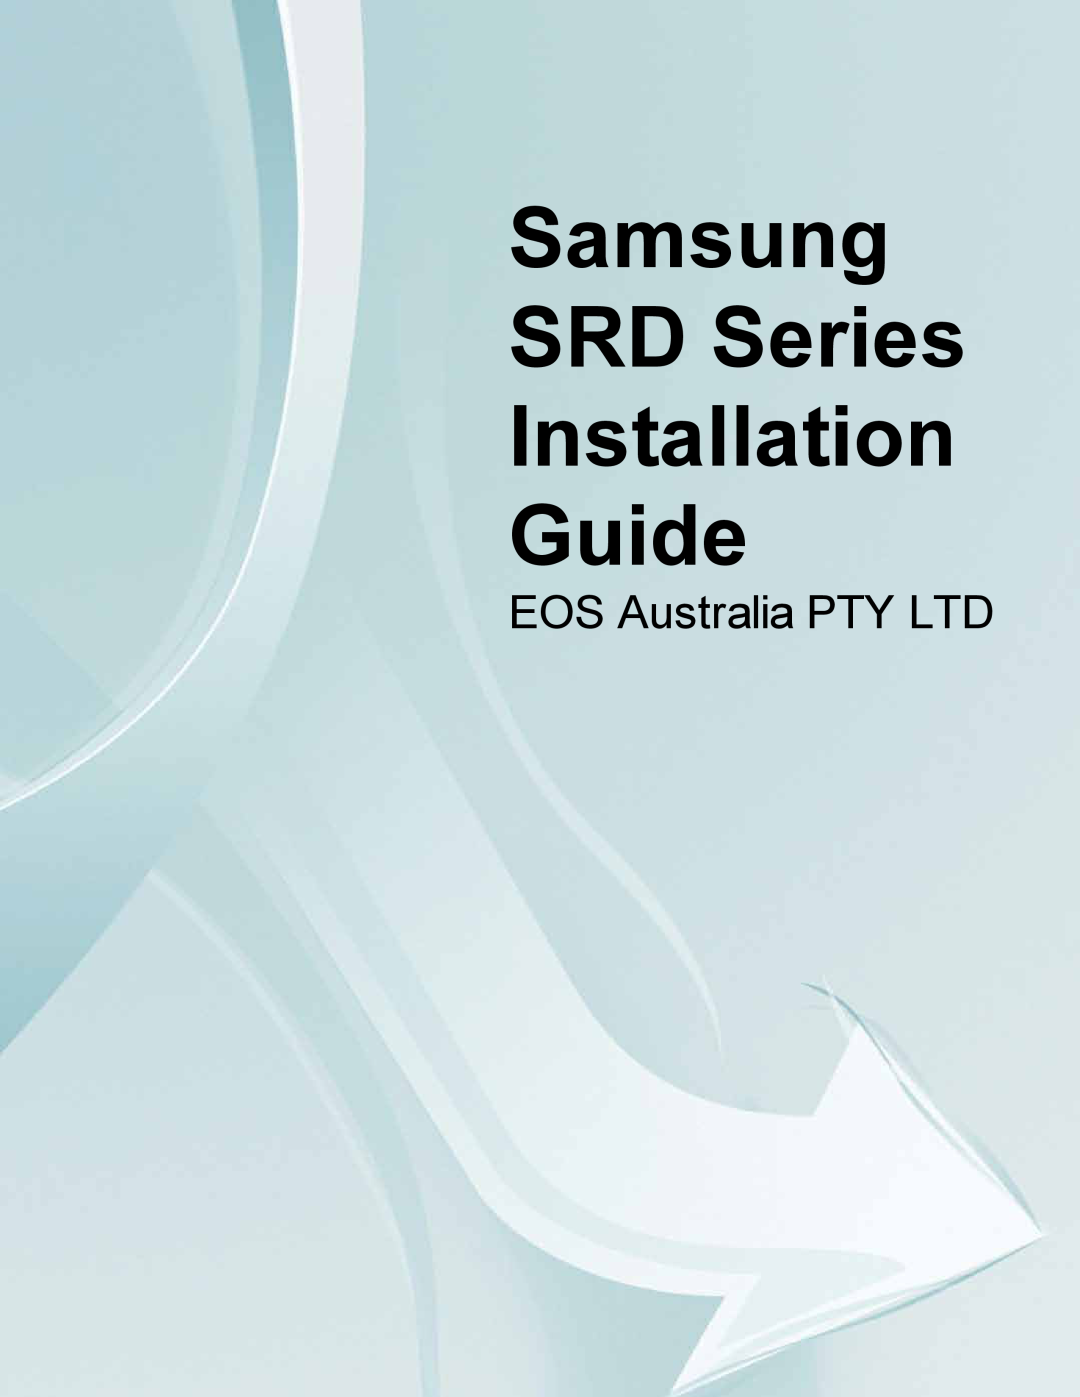 Samsung SDR4200 manual Samsung SRD Series Installation Guide 